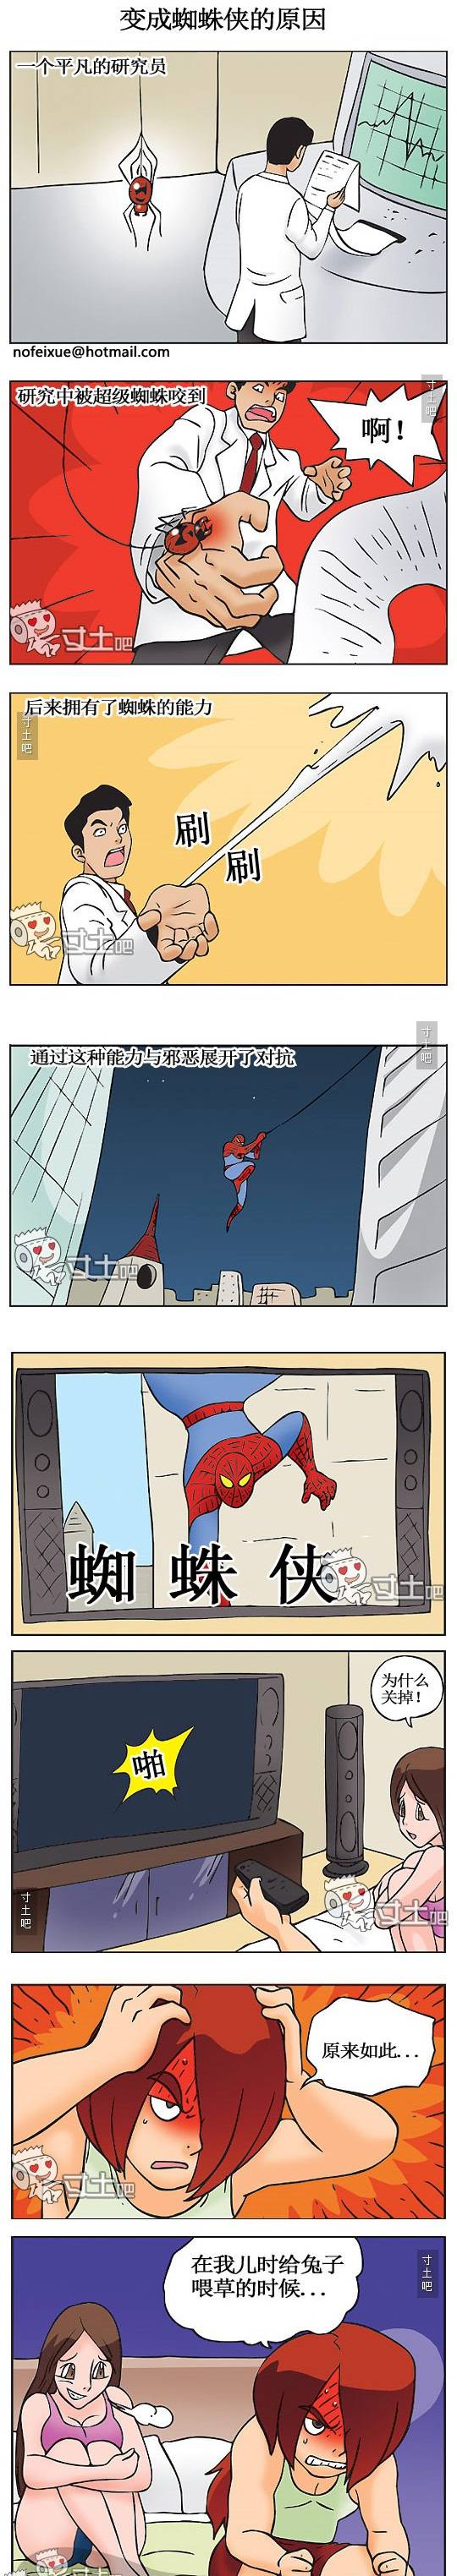 邪恶少年漫画之变成蜘蛛侠的原因